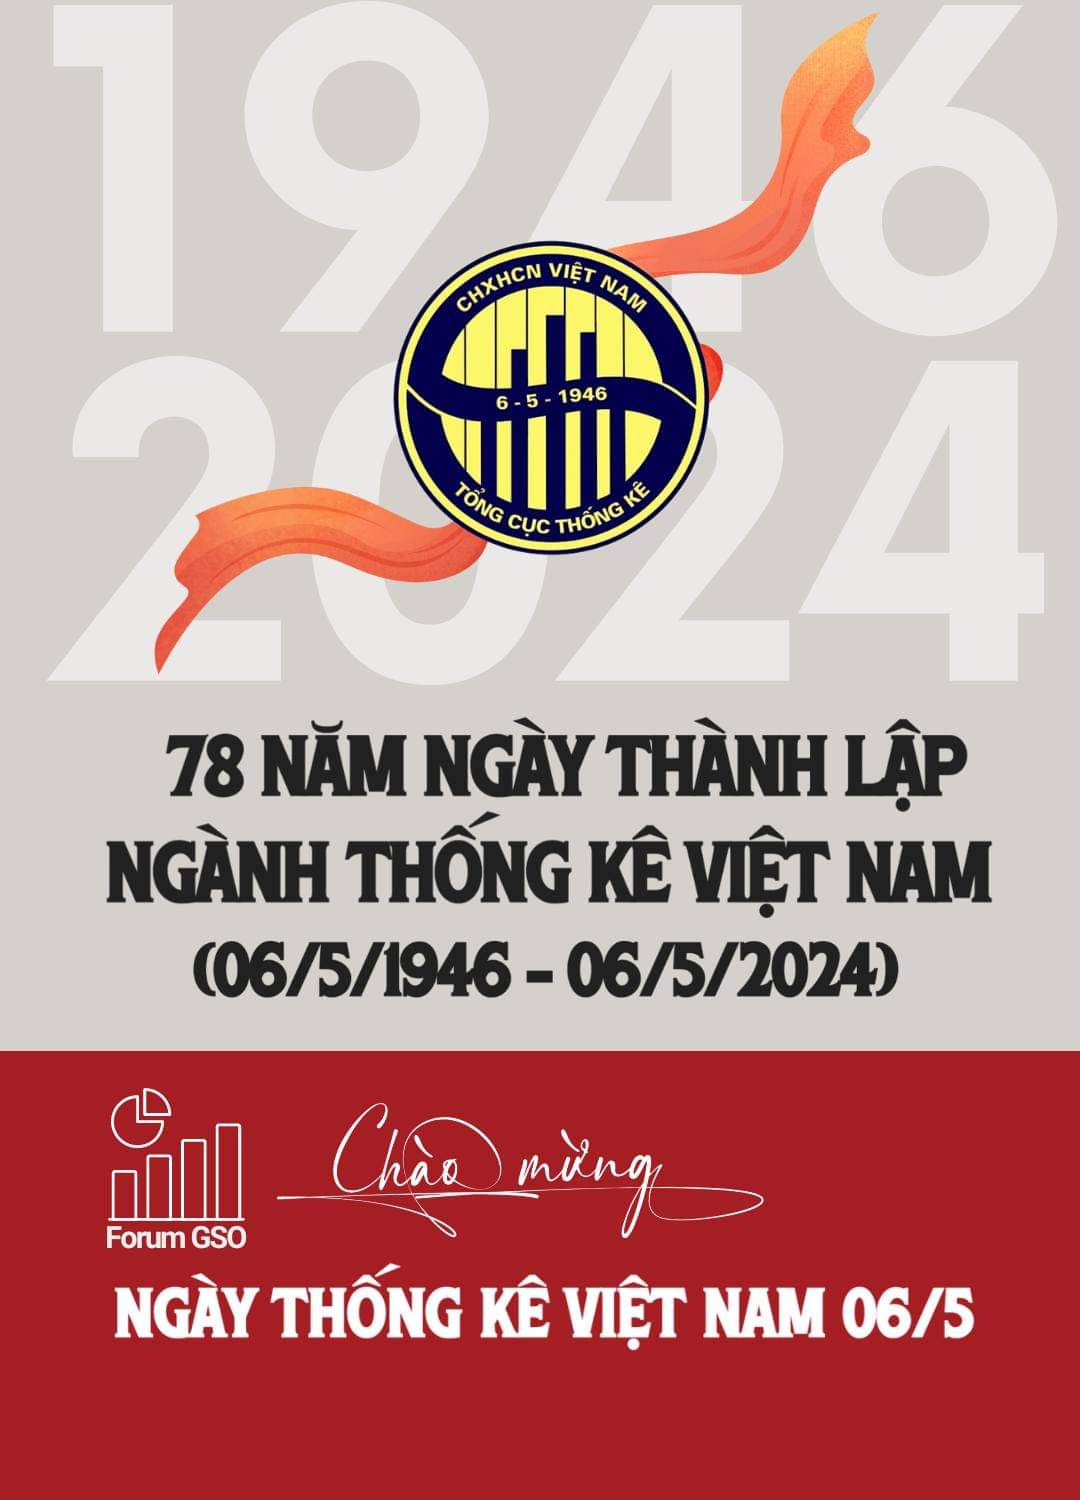 Chào mừng 78 năm ngày thành lập ngành Thống kê Việt Nam